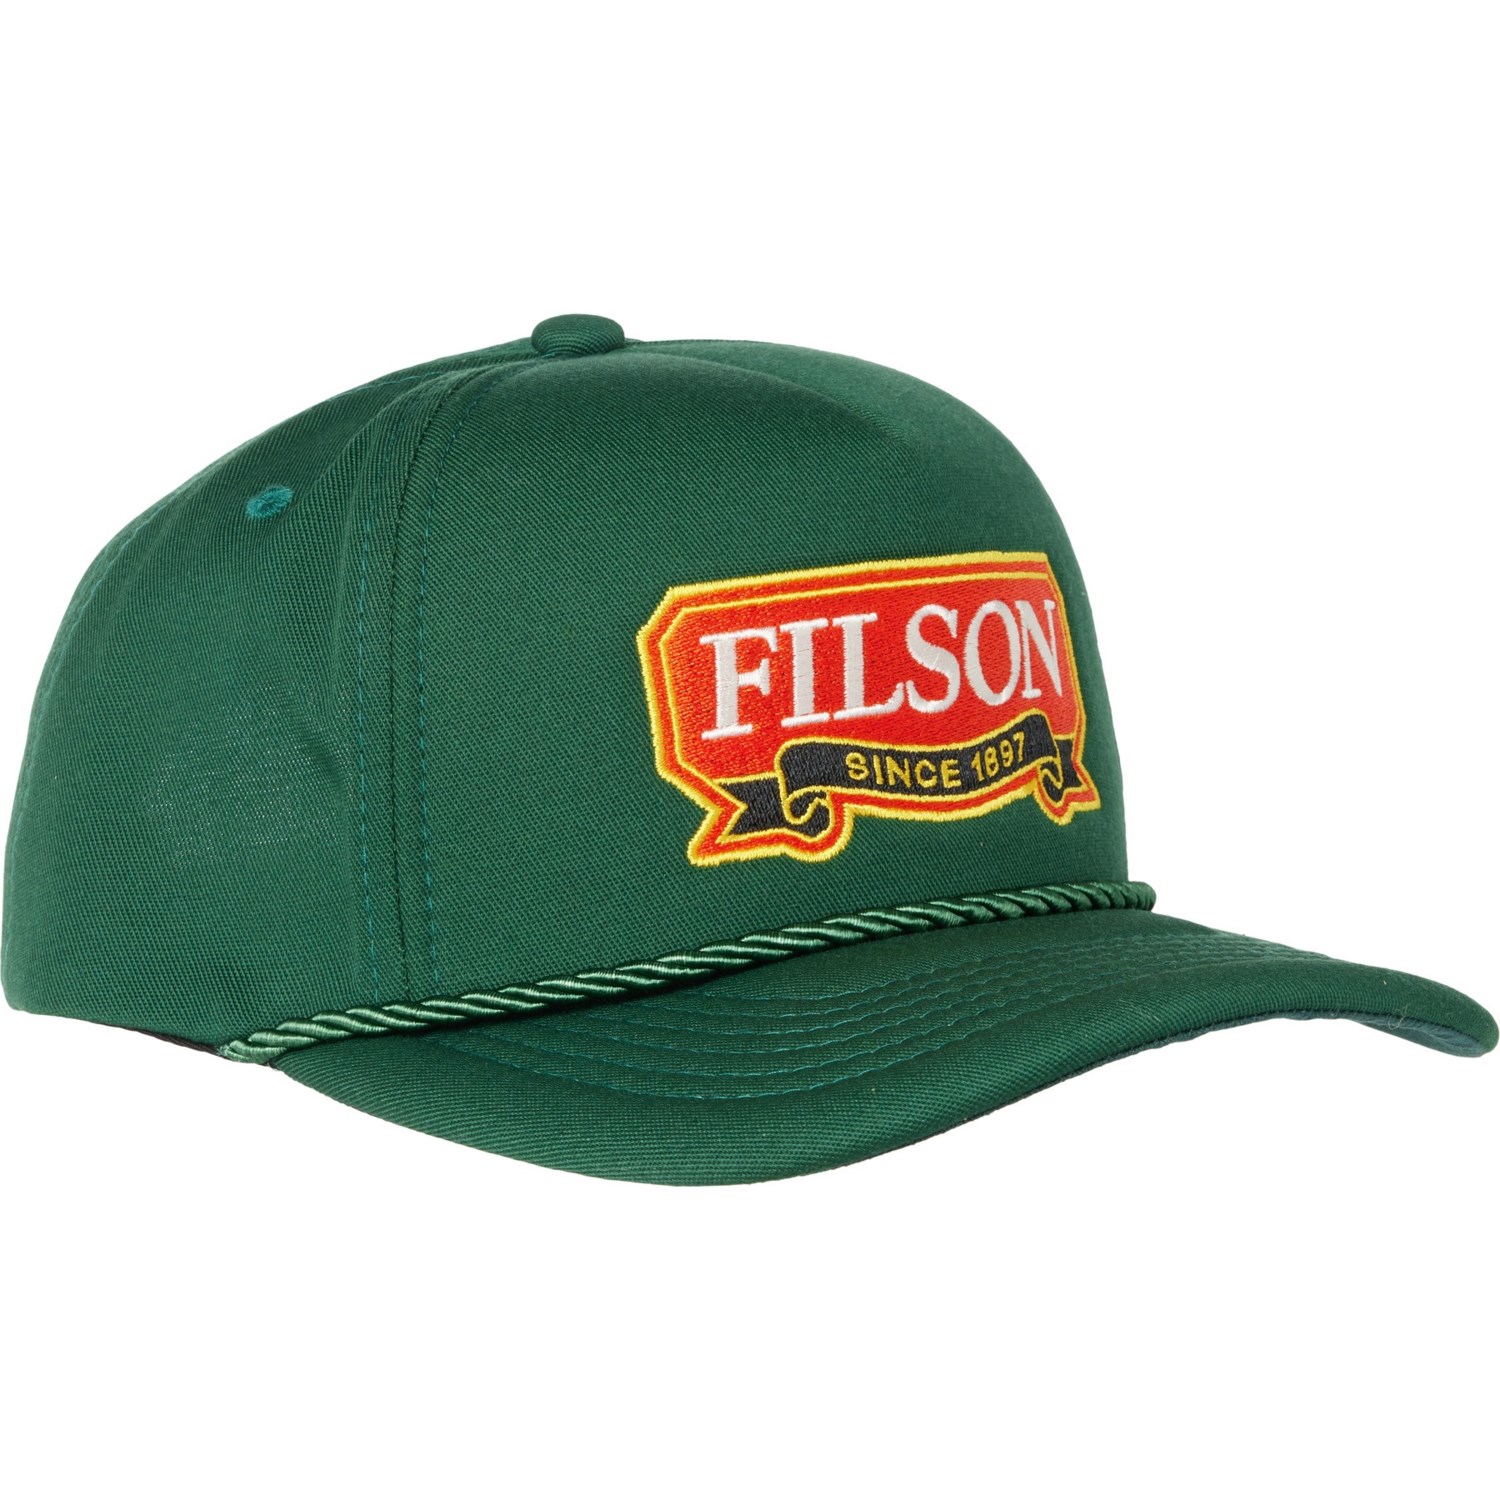 Filson Harvester Baseball Cap (For Men) - Save 55%